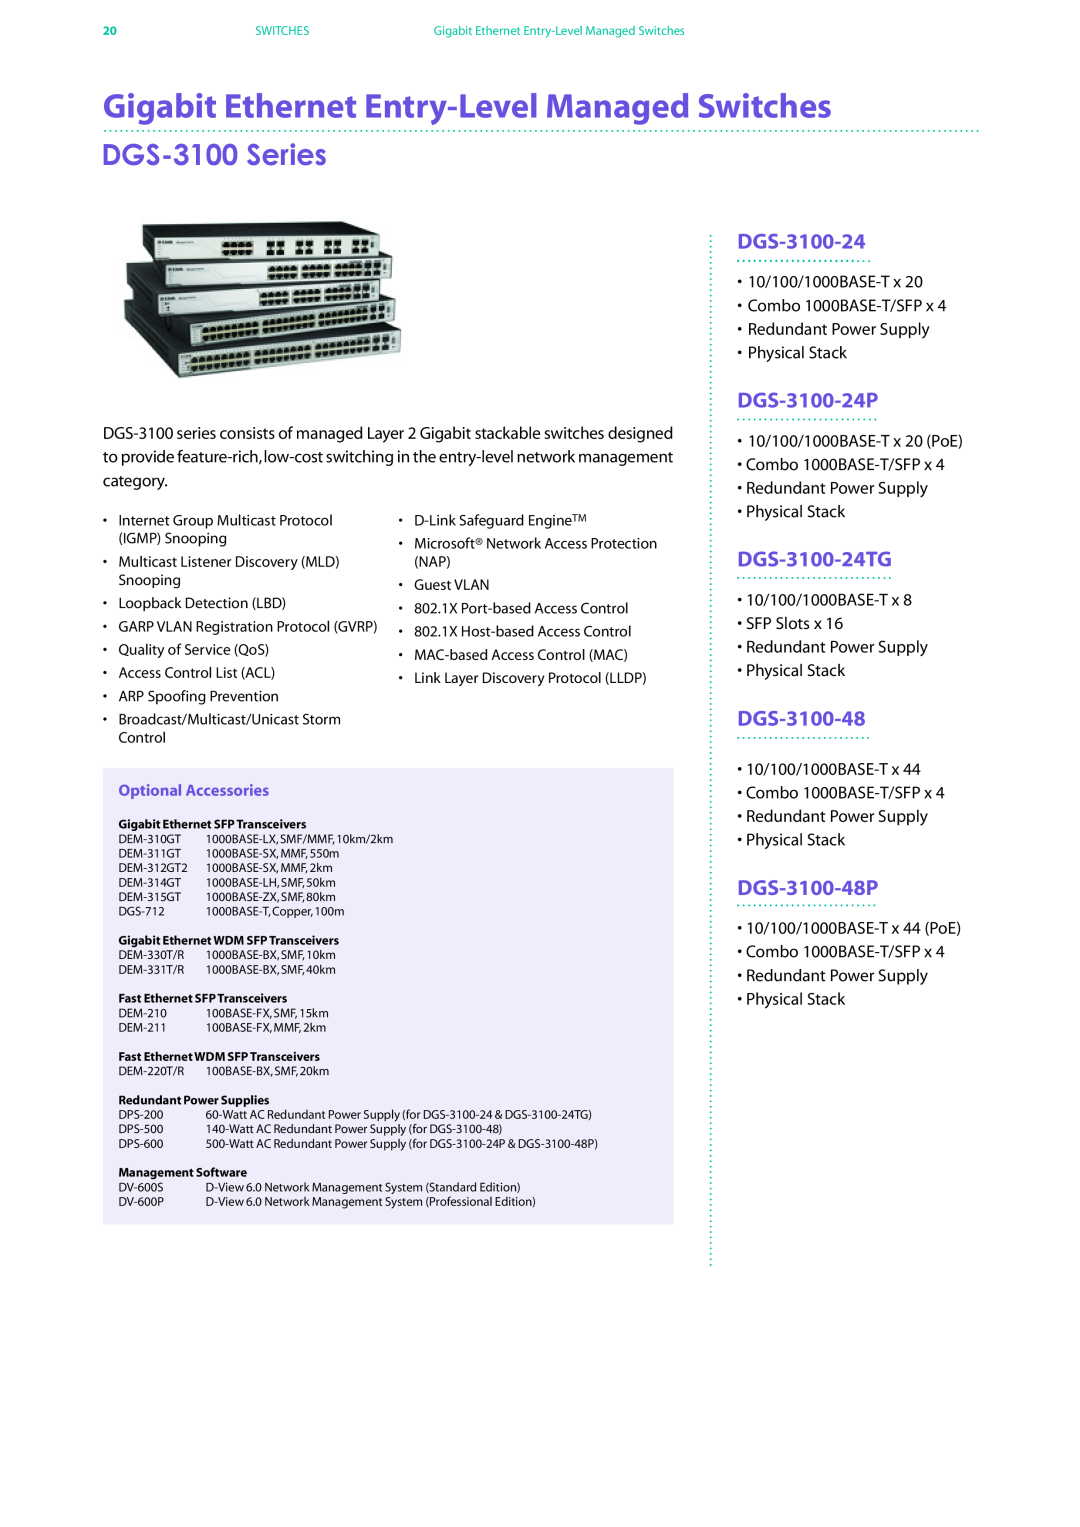 D-Link DES-7200 manual Gigabit Ethernet Entry-Level Managed Switches, DGS-3100 Series, DGS-3100-24P, DGS-3100-24TG 